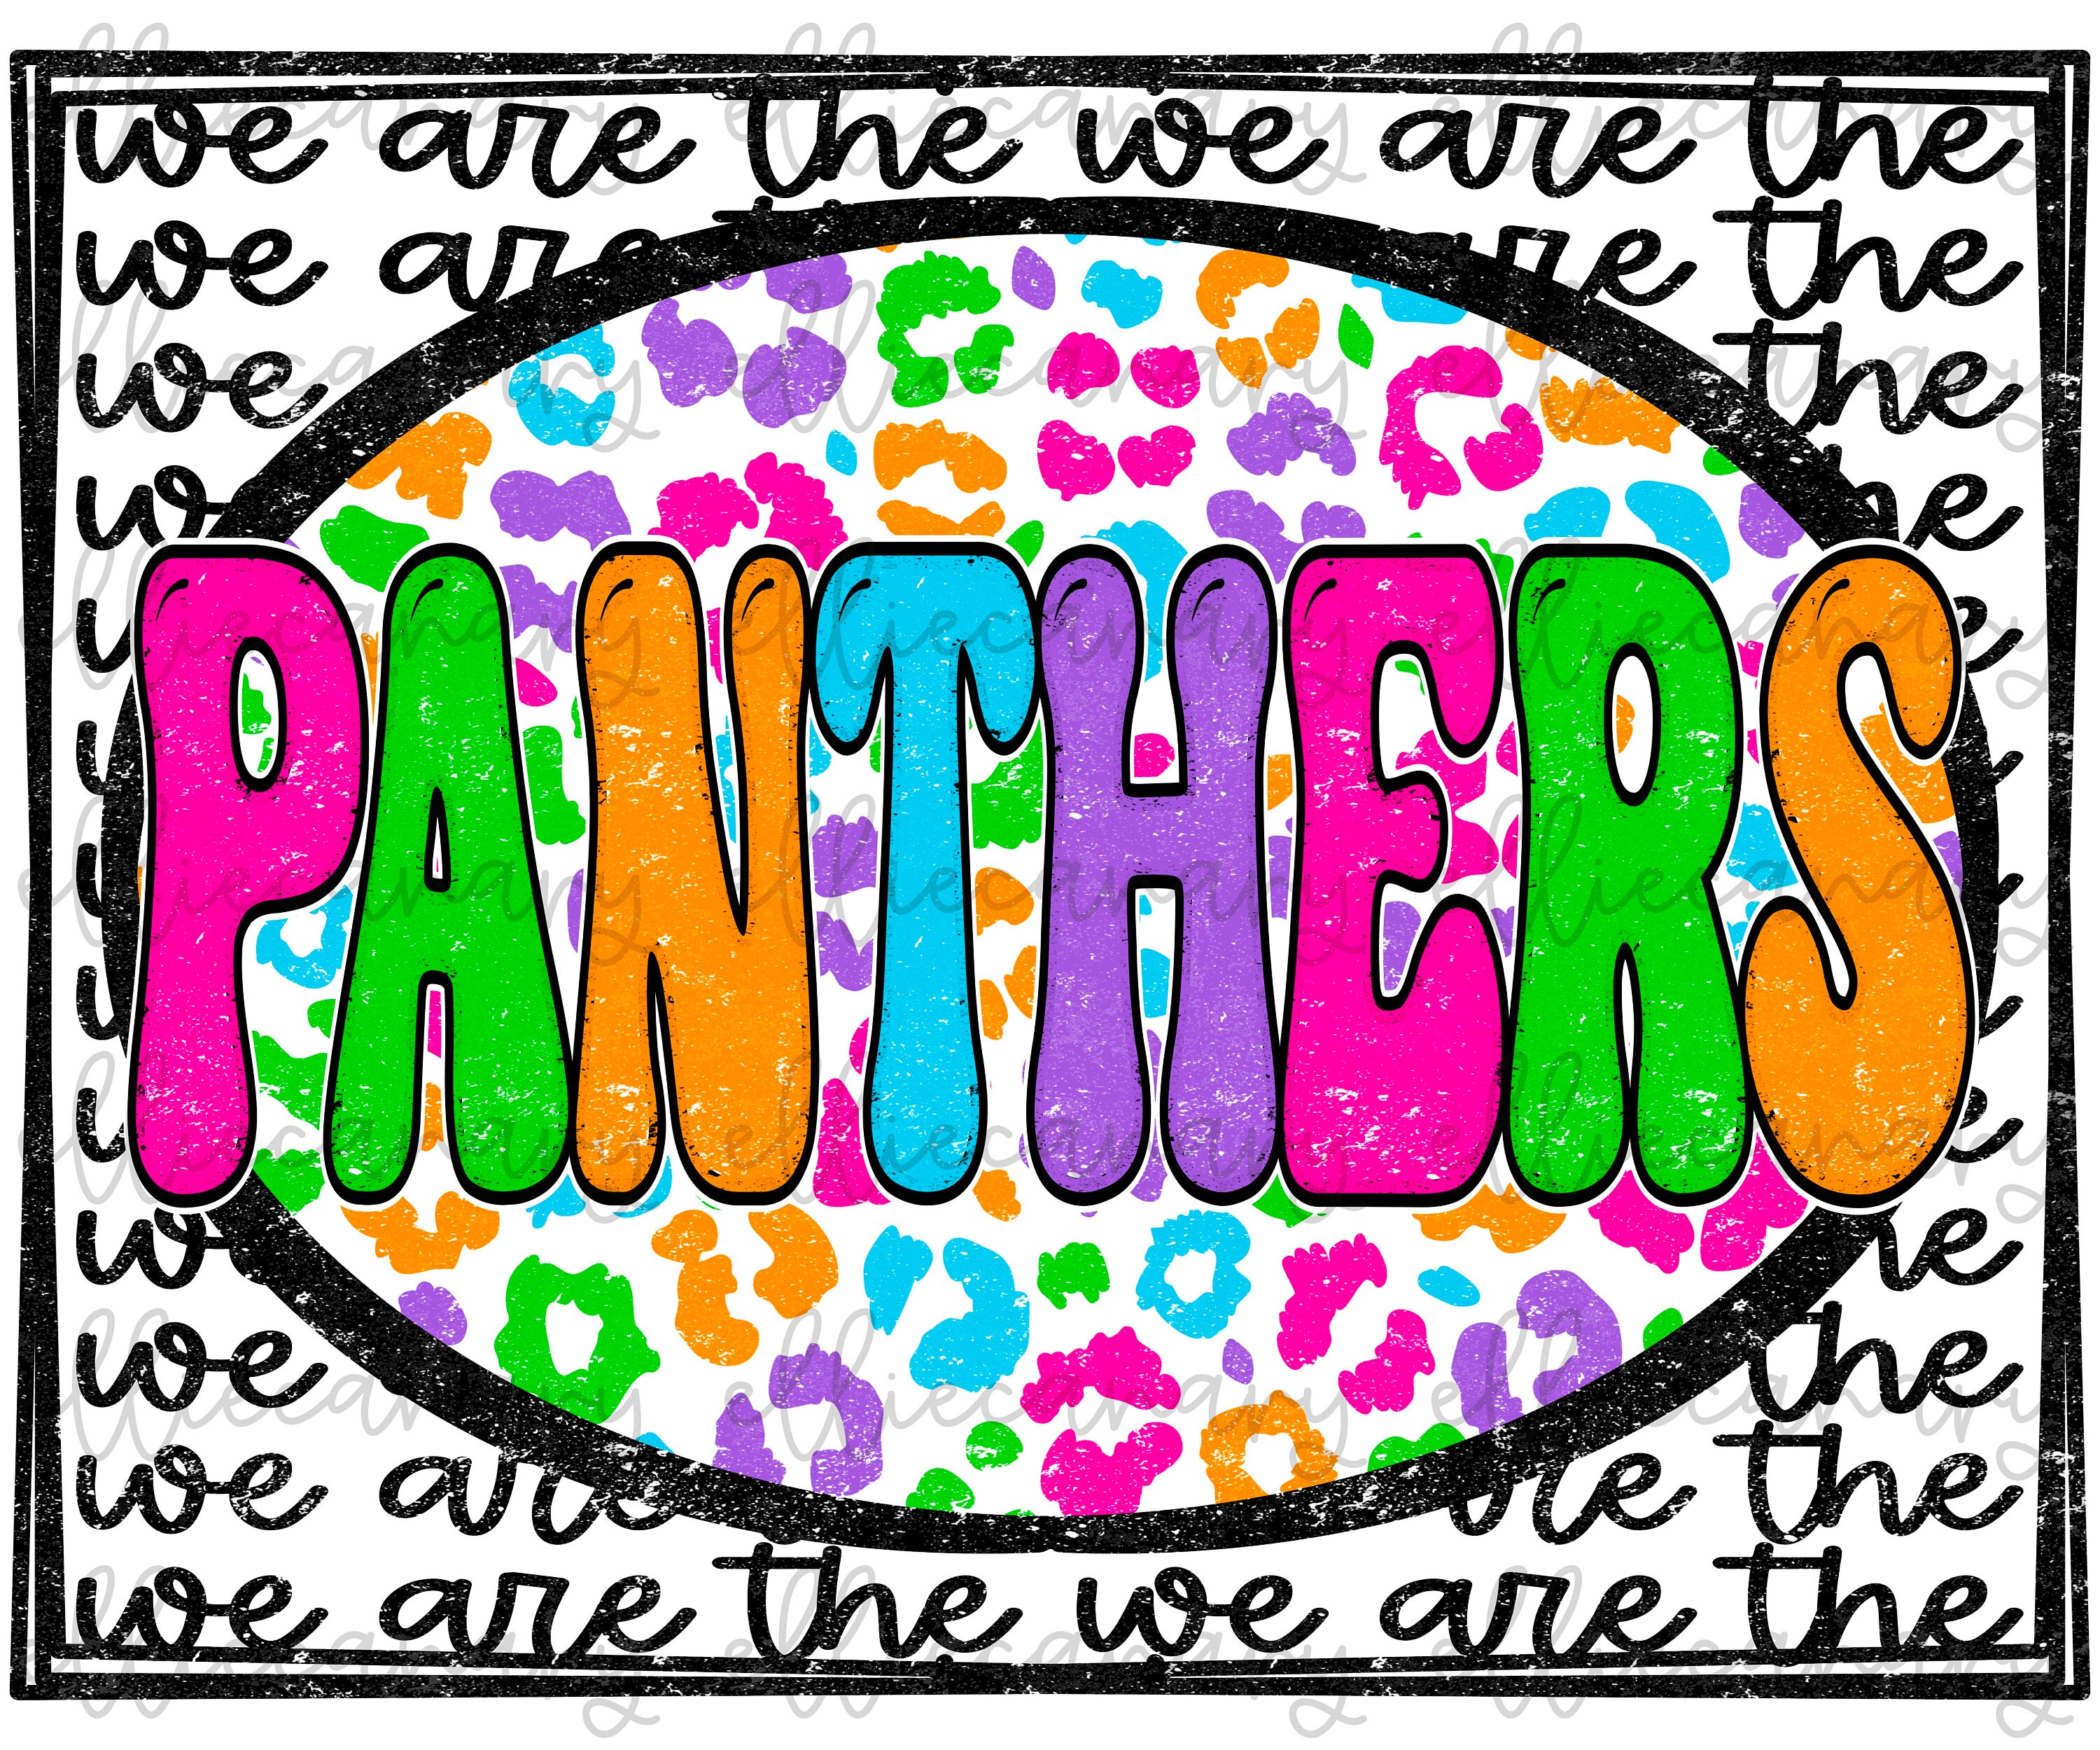 Carolina Panthers Heart Football Team Svg, Carolina Panthers - Inspire  Uplift